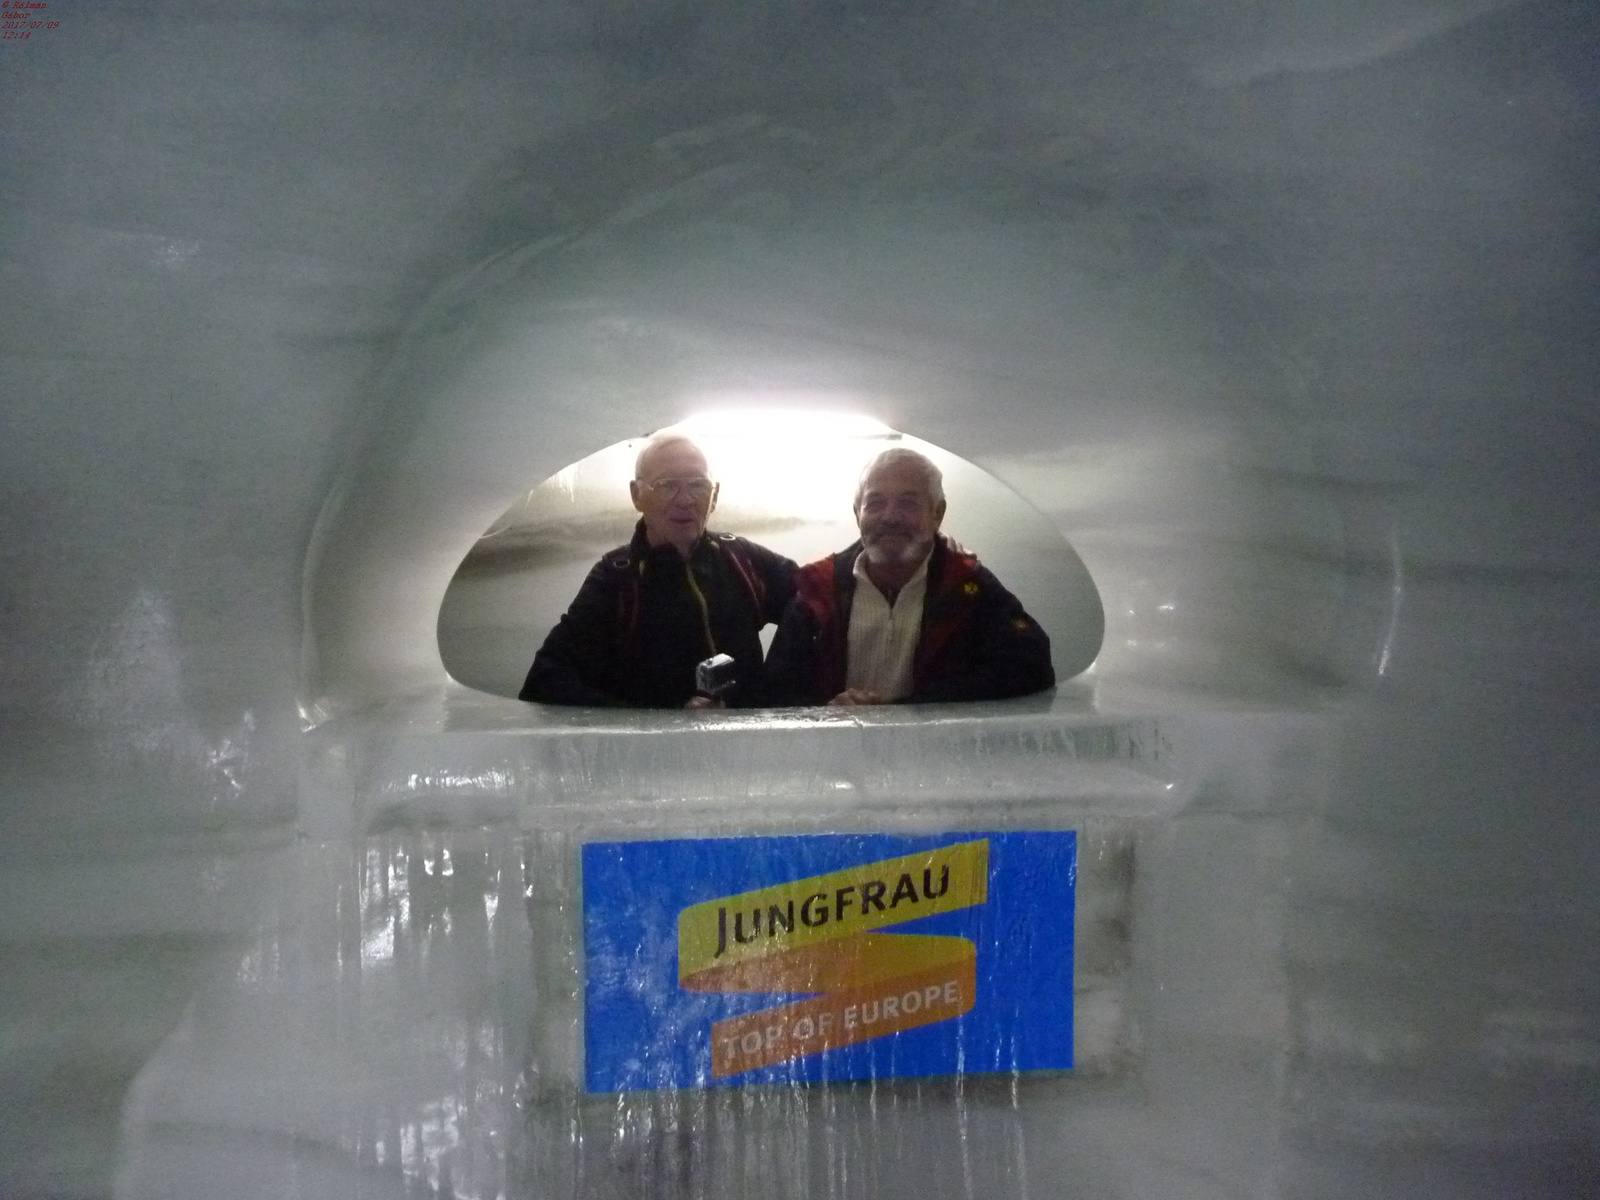 131 - Jungfraujoch